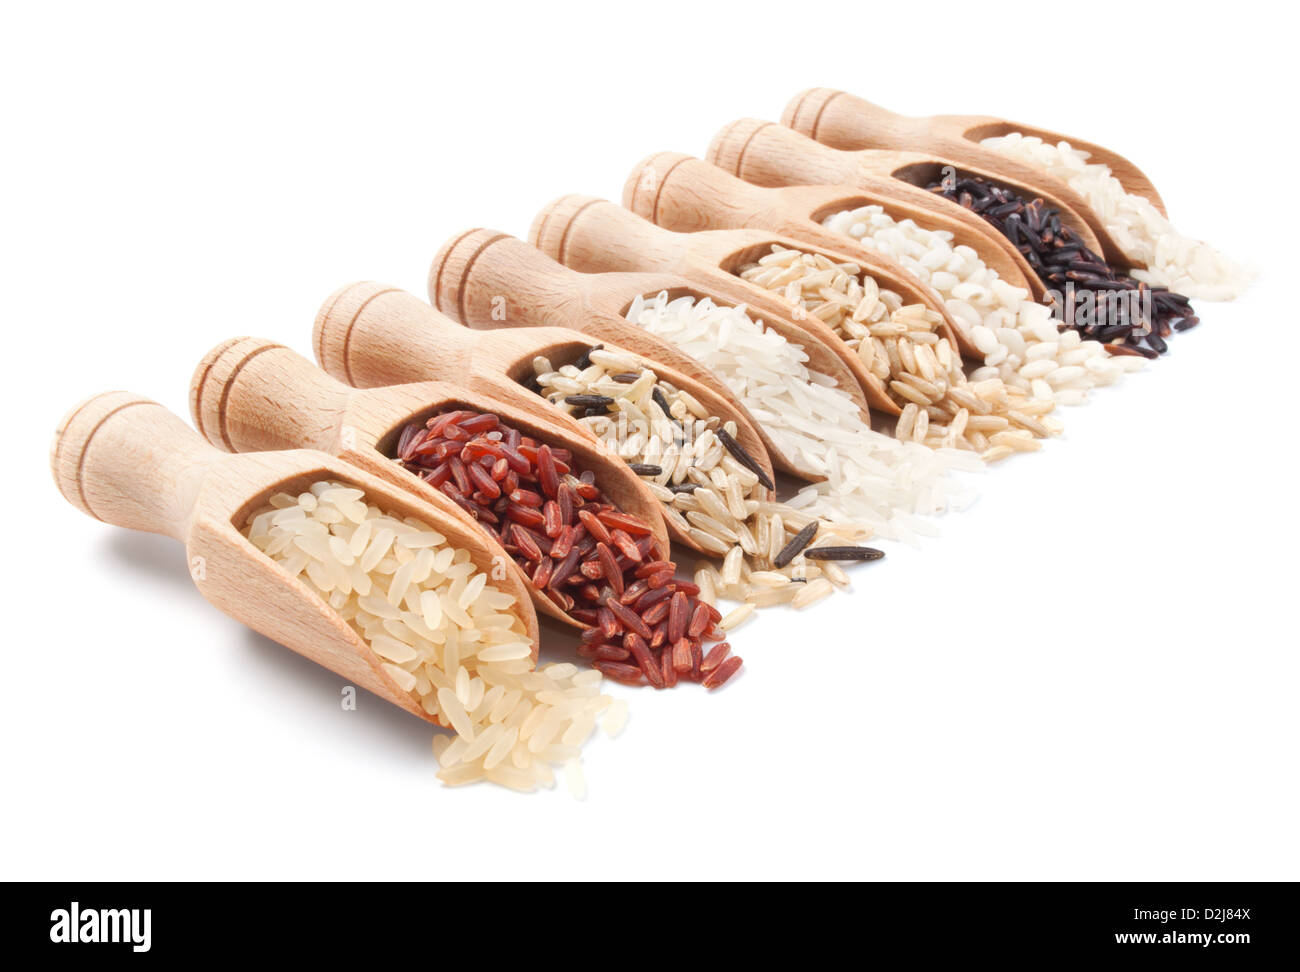 Cucharas de madera con diferentes tipos de arroz esparcidos de ellos sobre fondo blanco. Foto de stock